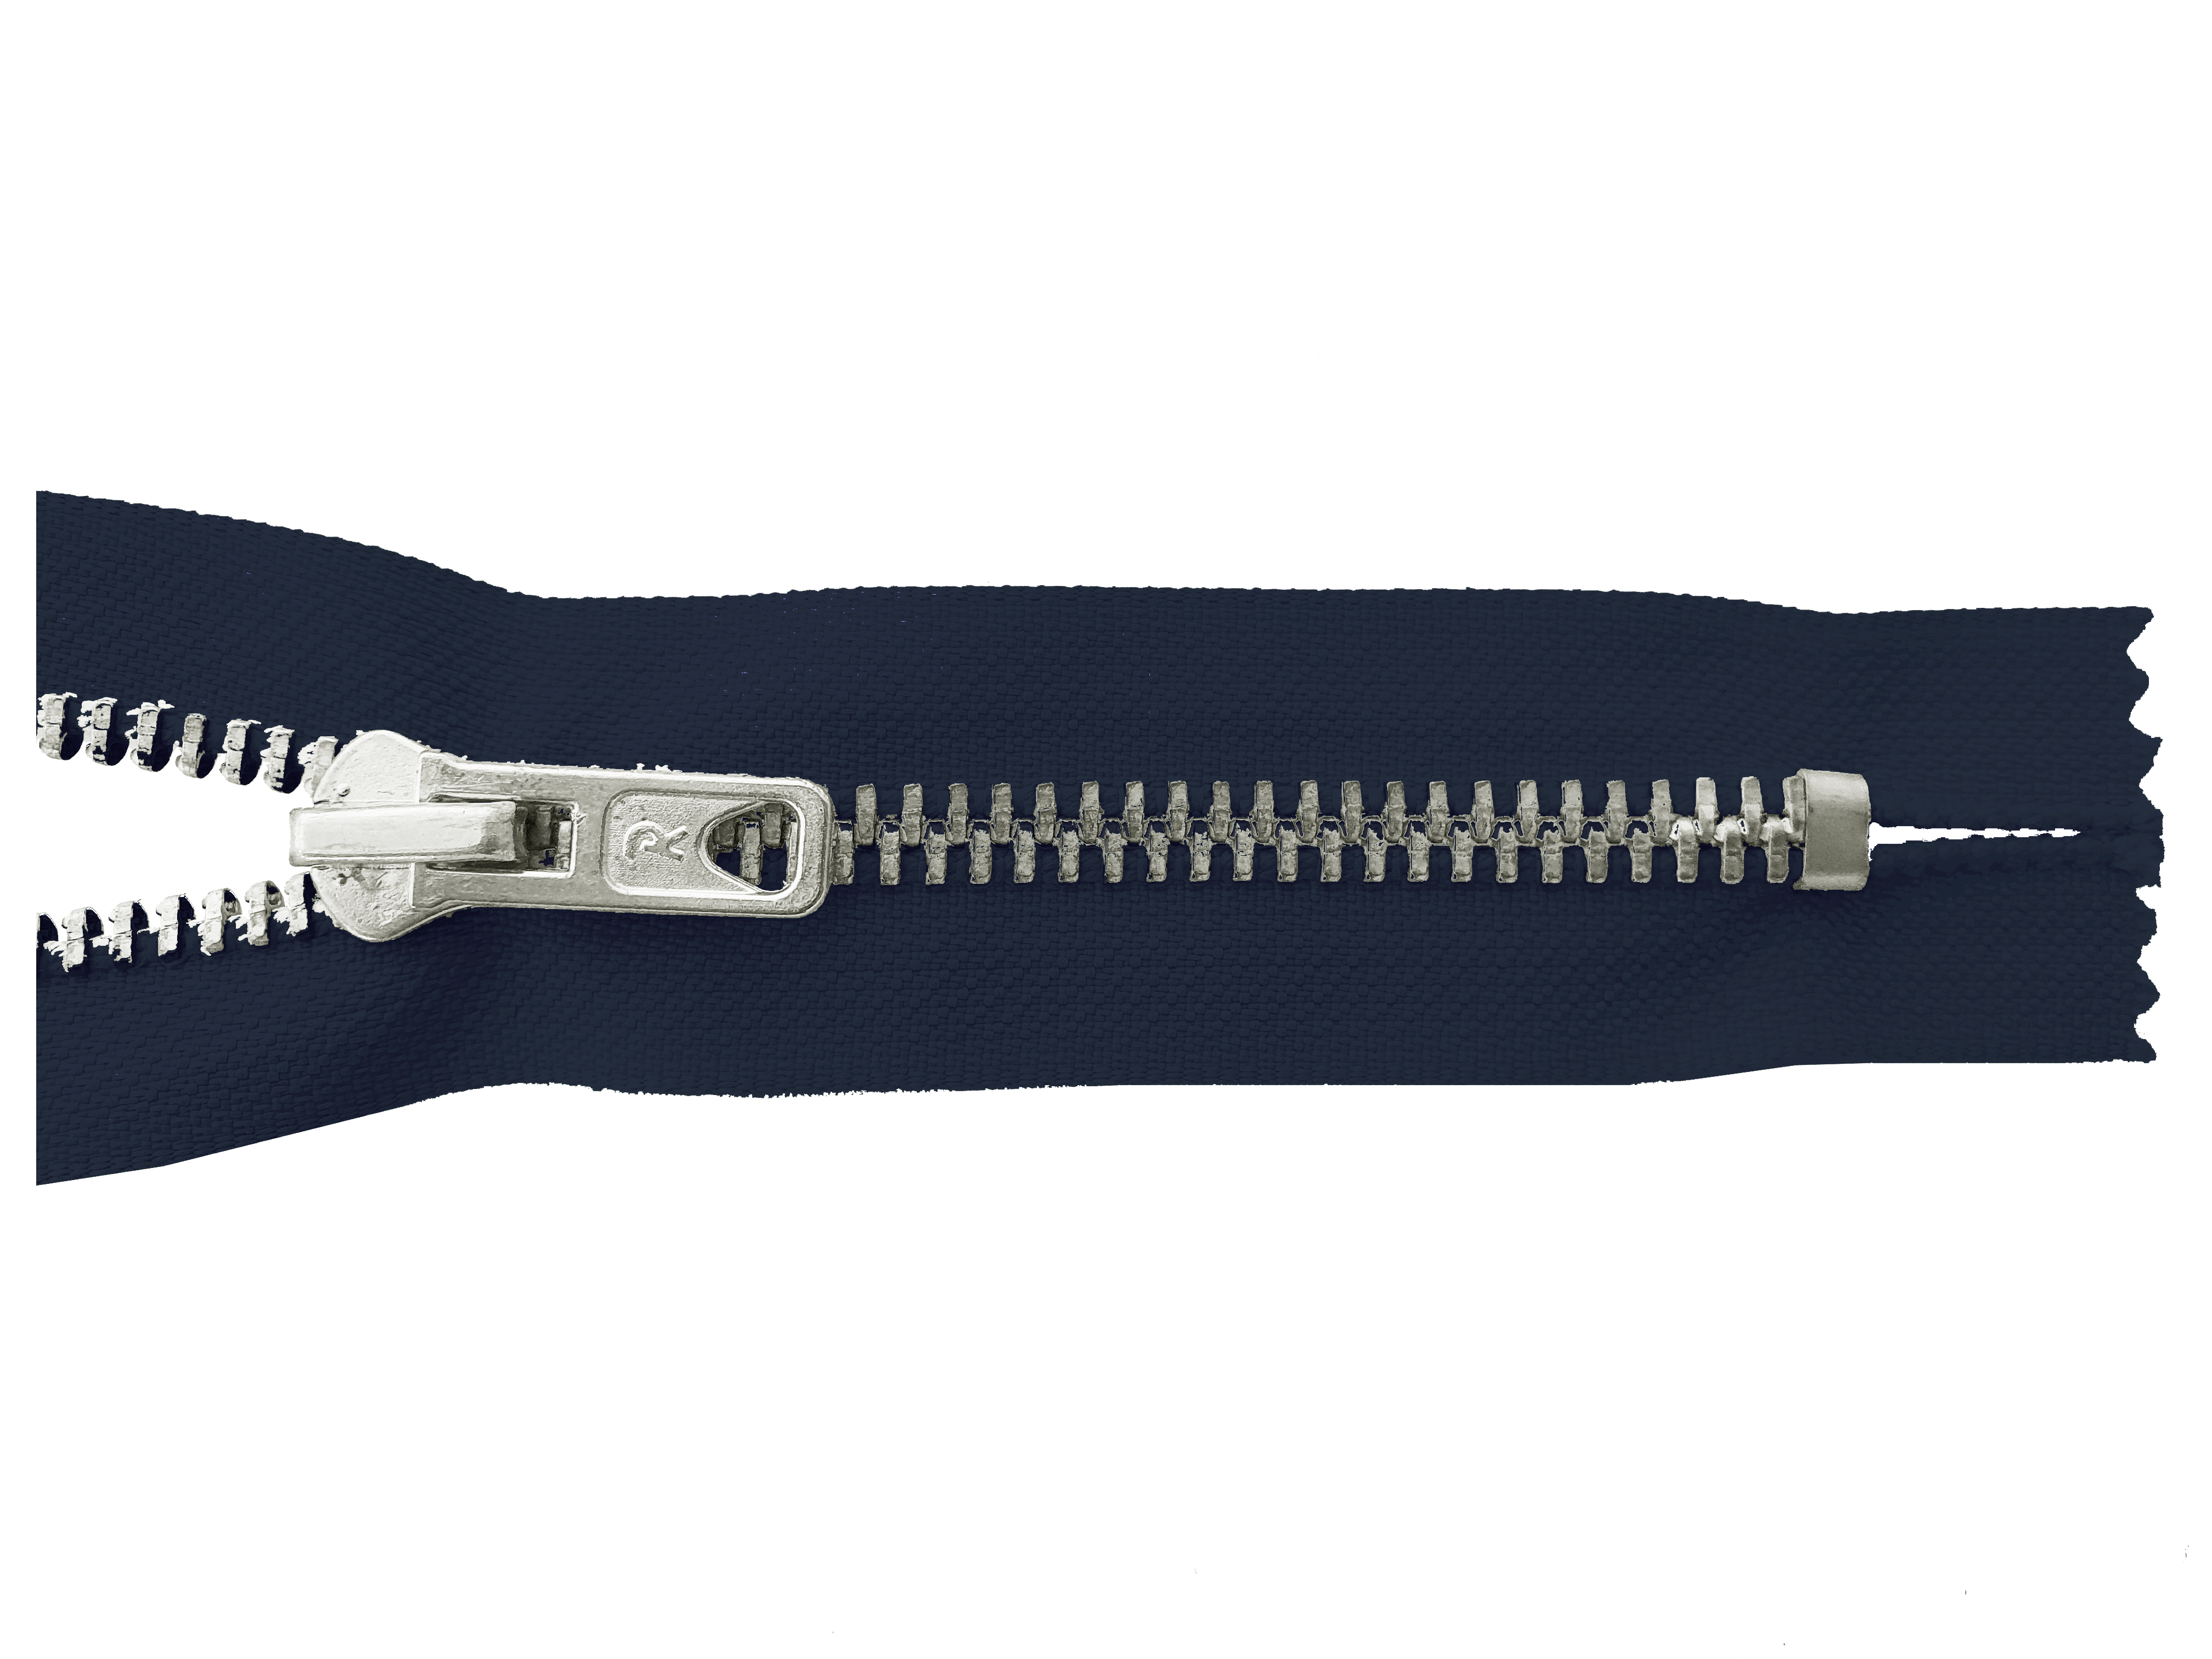 Reißverschluss 10cm, nicht teilbar, Metall silberf. breit, dunkelblau, hochwertiger Marken-Reißverschluss von Rubi/Barcelona